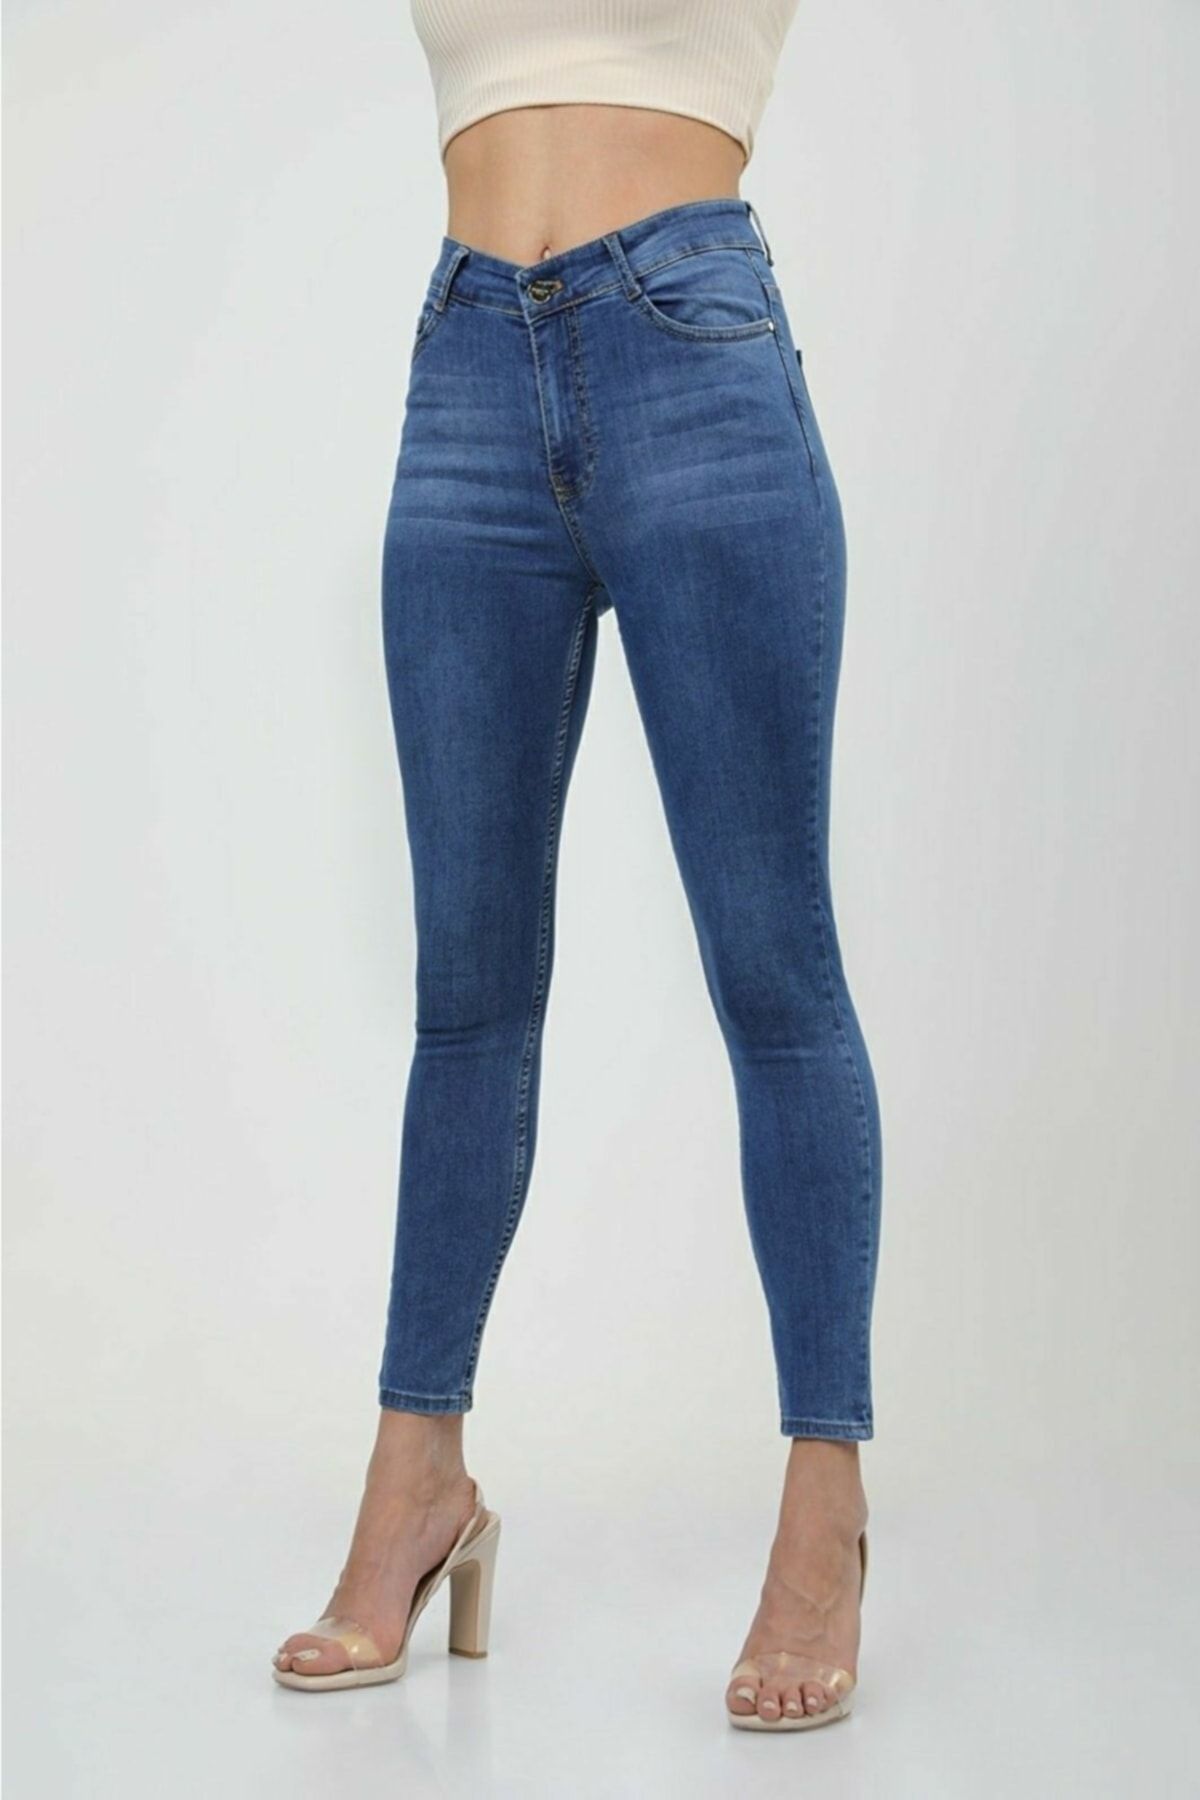 Maystore Kadın Bıyıklı Desen Toparlayıcı Skinny Kot Pantolon -indigo jean